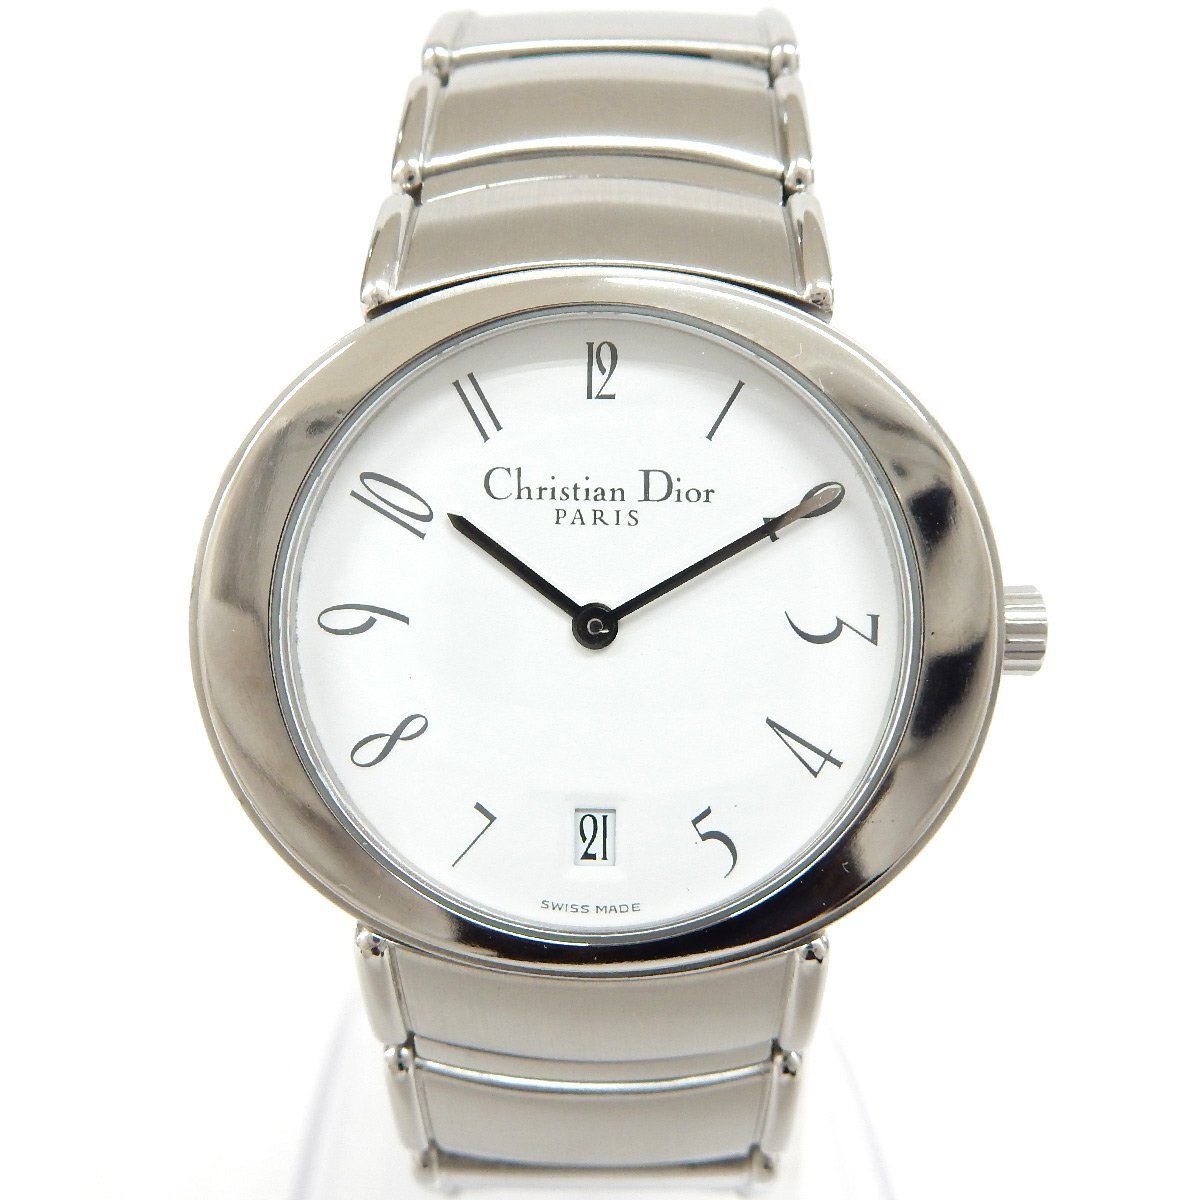 SA63■ [送料無料/中古美品] ディオール Christian Dior クォーツ腕時計 D77-100 ホワイト×シルバーの画像2